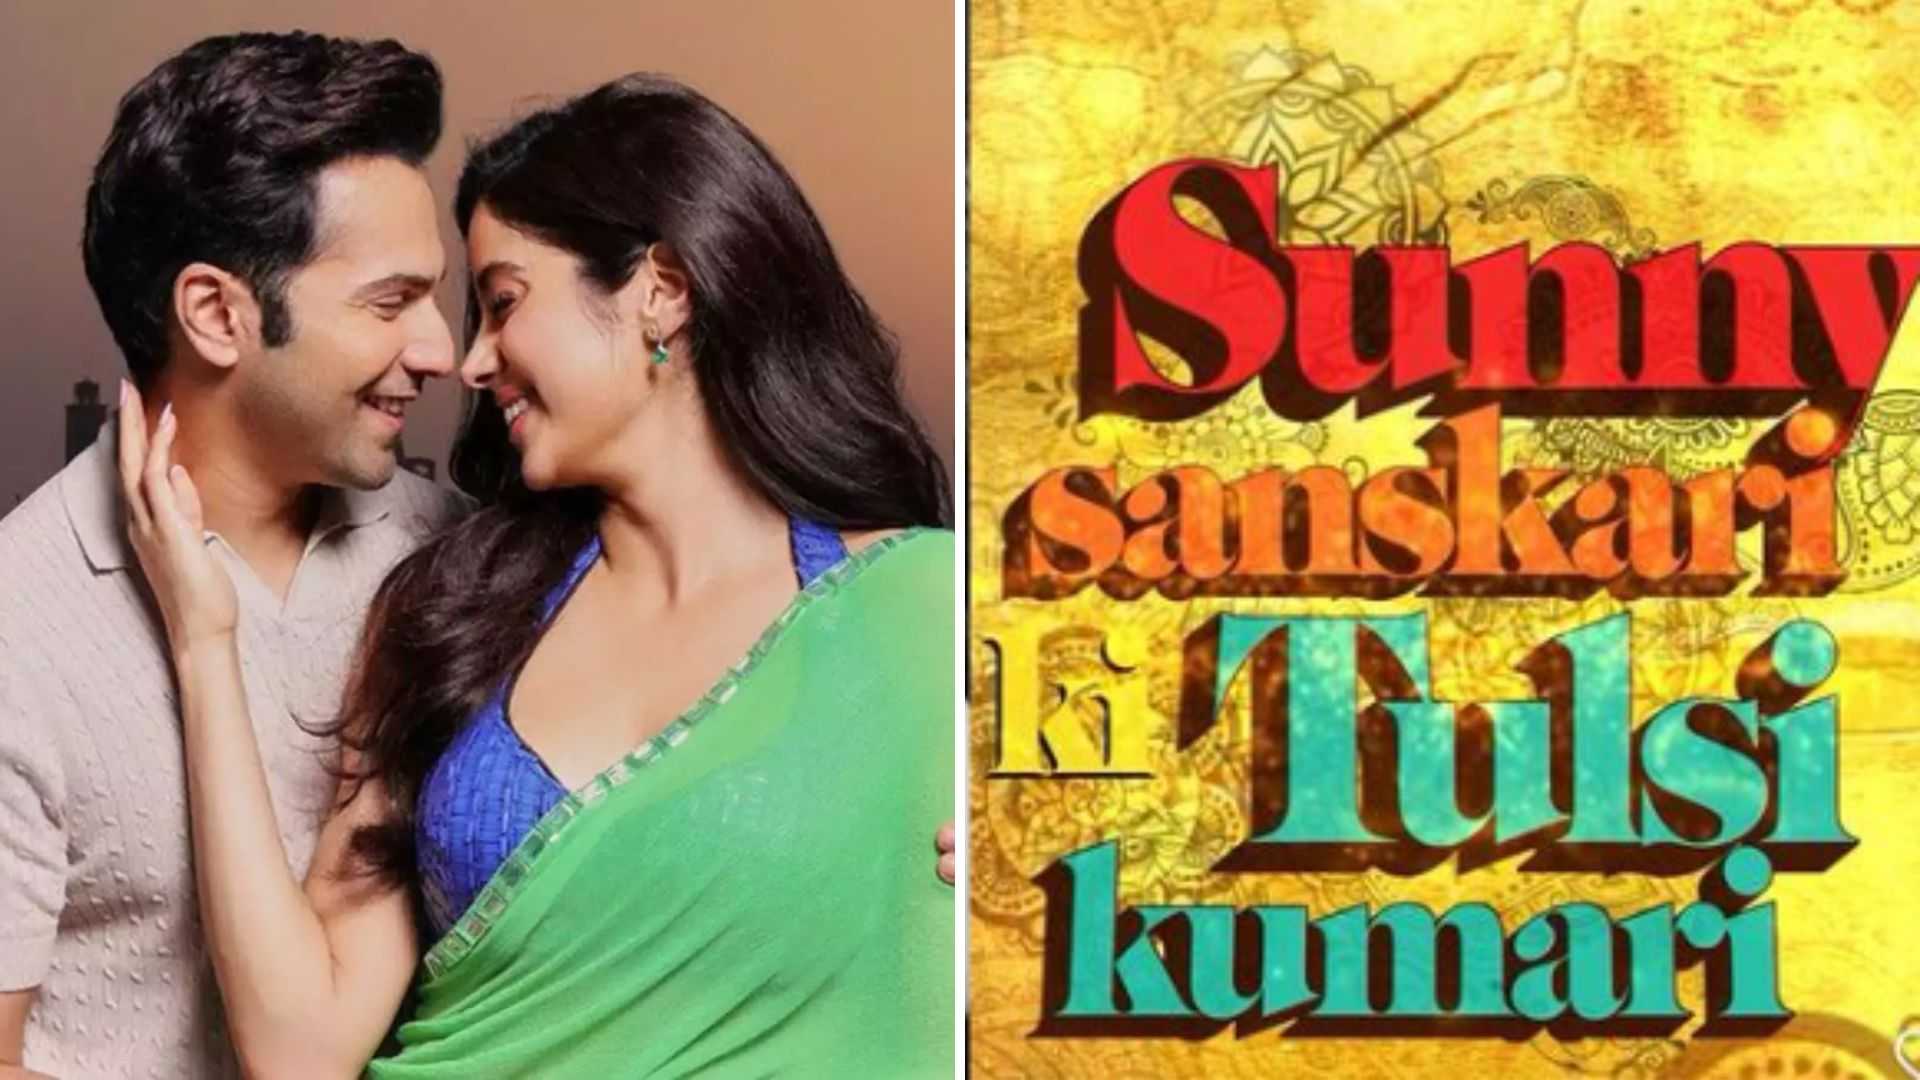 Sunny Sanskari Ki tulsi Kumari: सनी संस्कारी बनकर तुलसी को पटाने इस दिन निकलेंगे वरुण धवन, मिला जाह्नवी संग रोमांस करने का मौका